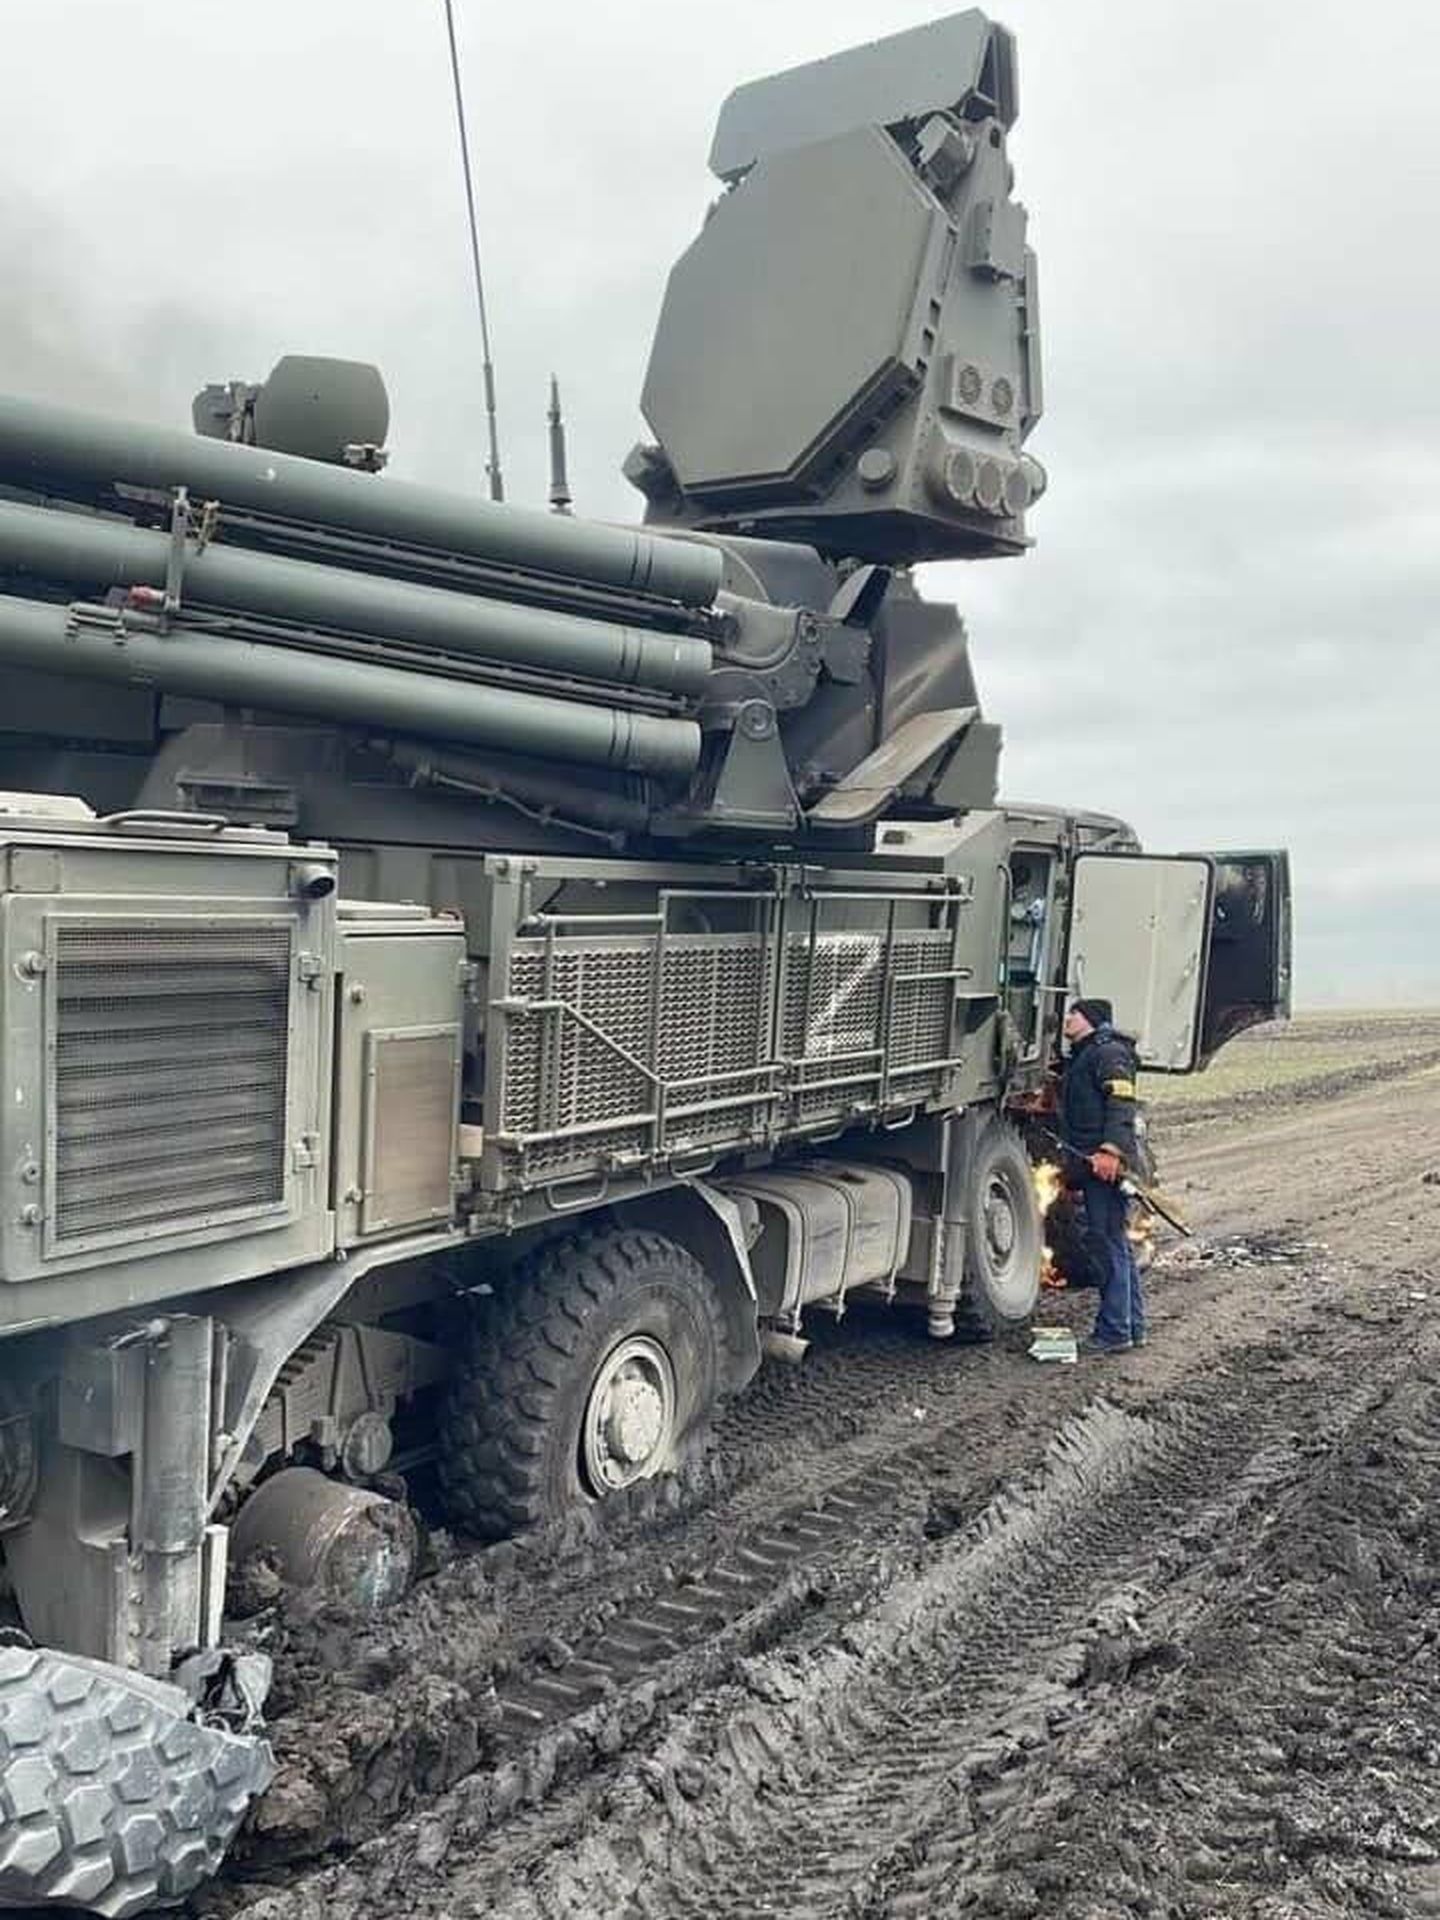 Unidades militares rusas varadas en el barro gracias a sus neumáticos de mala calidad.